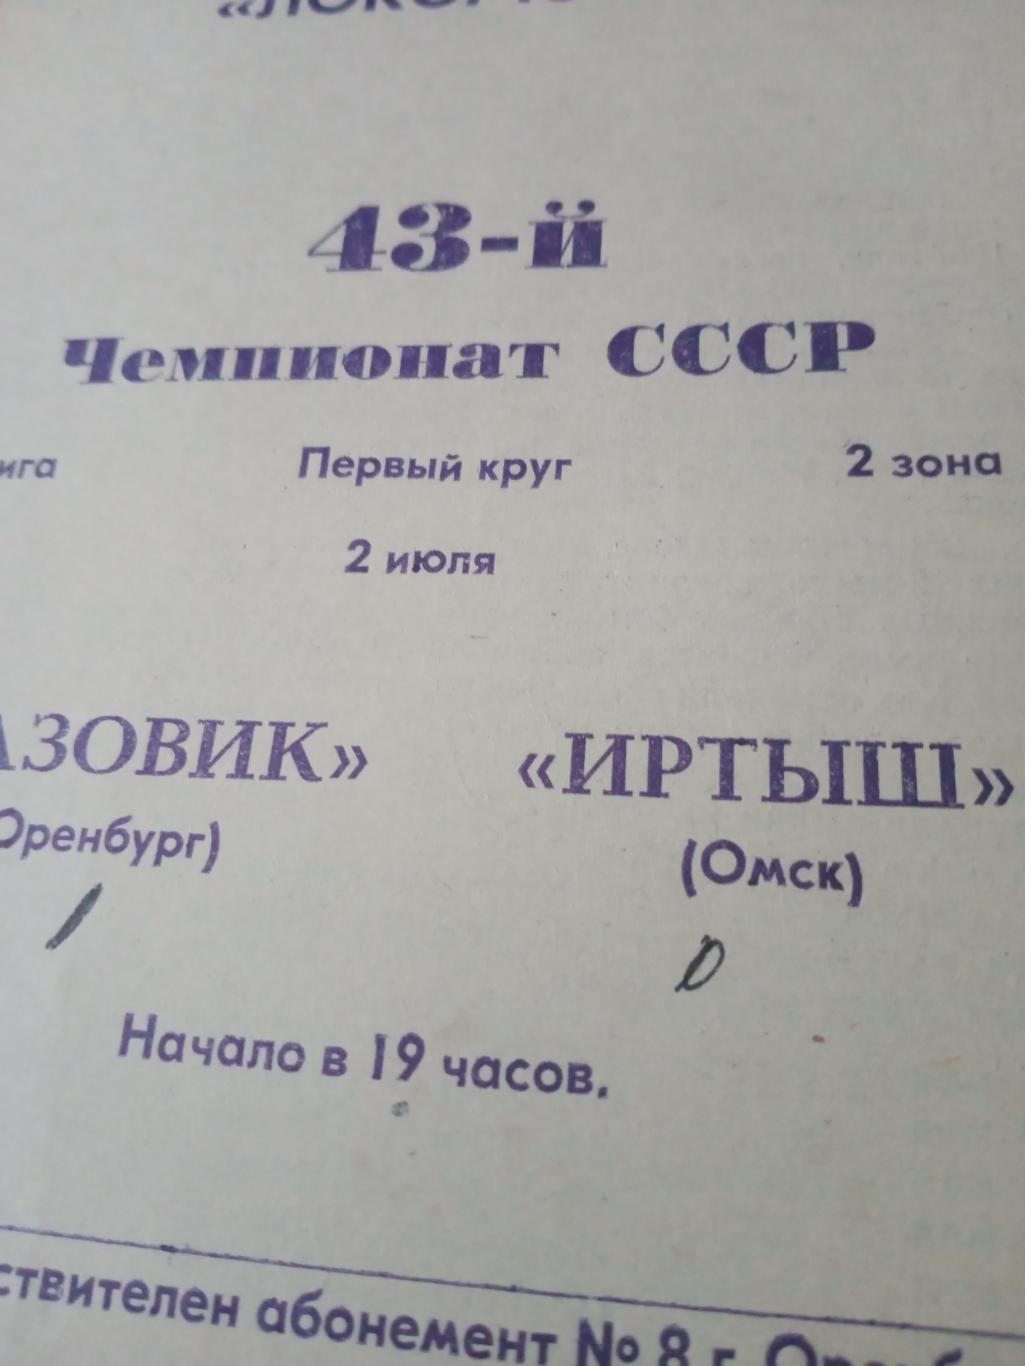 Газовик Оренбург - Иртыш Омск. 2 июля 1980 год